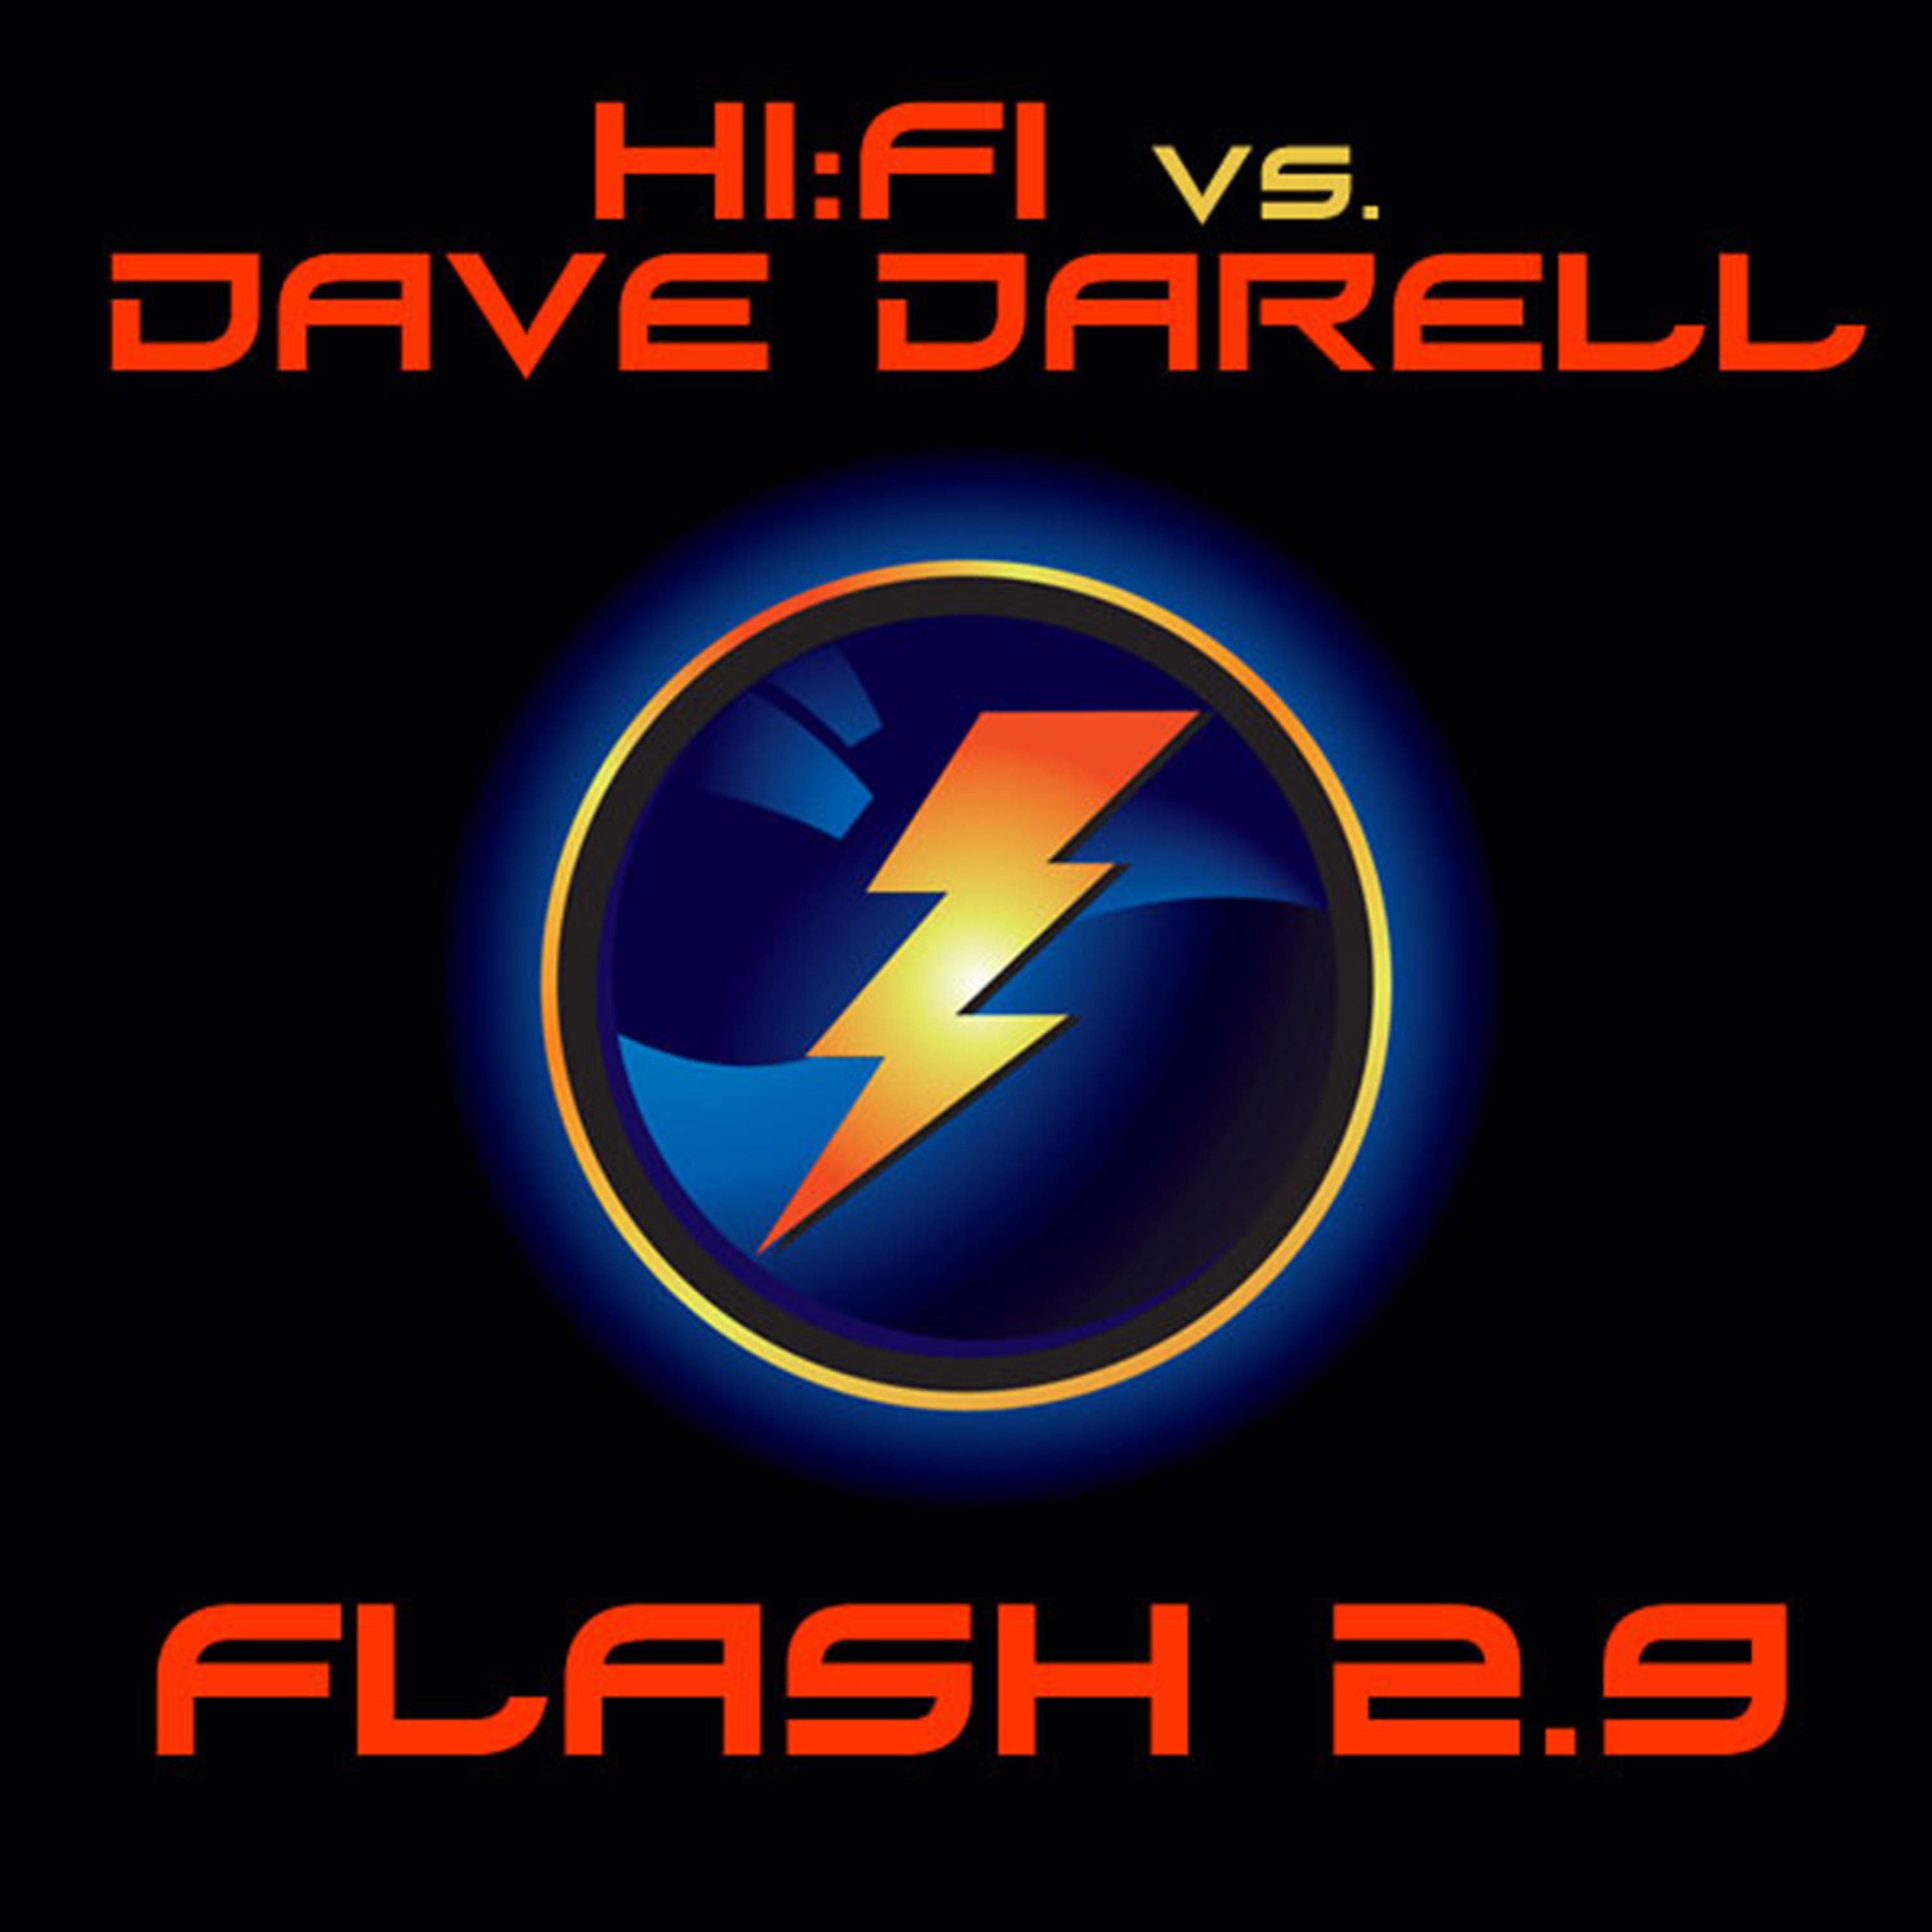 Flash 2.9 (Hi:Fi Club Mix)